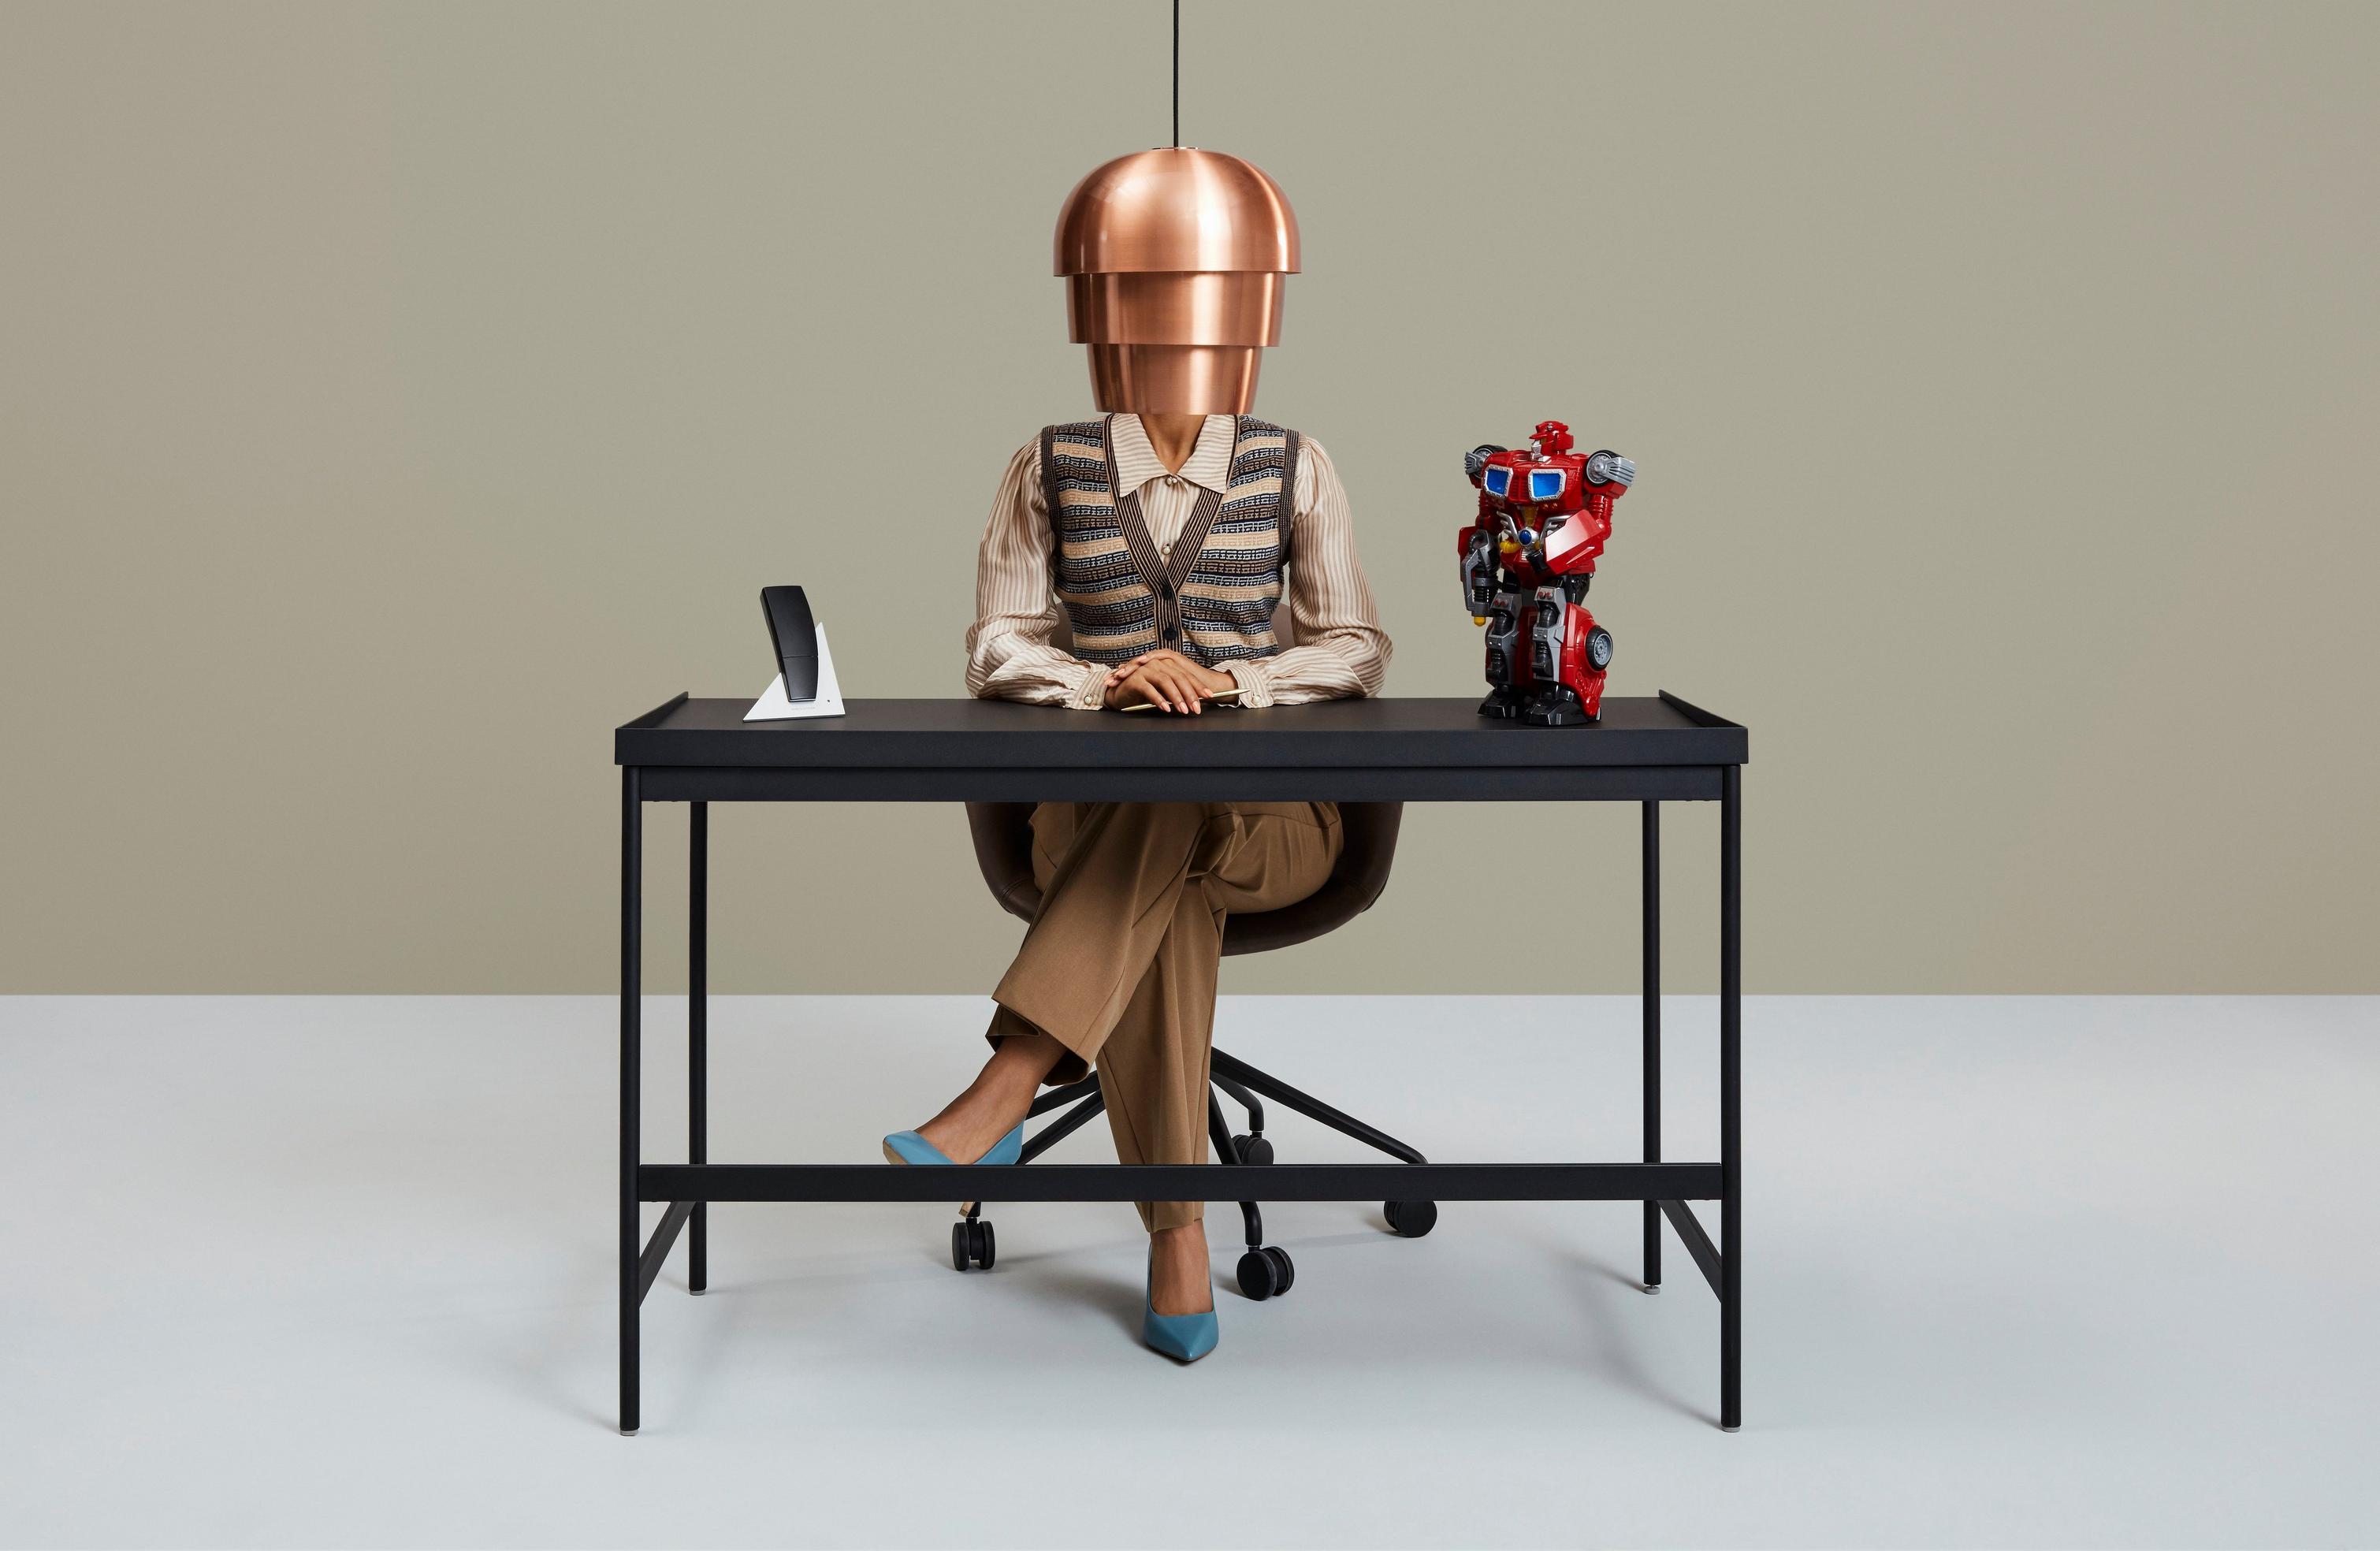 Человек за столом, дополненным абажуром, телефоном и цветной фигуркой робота.